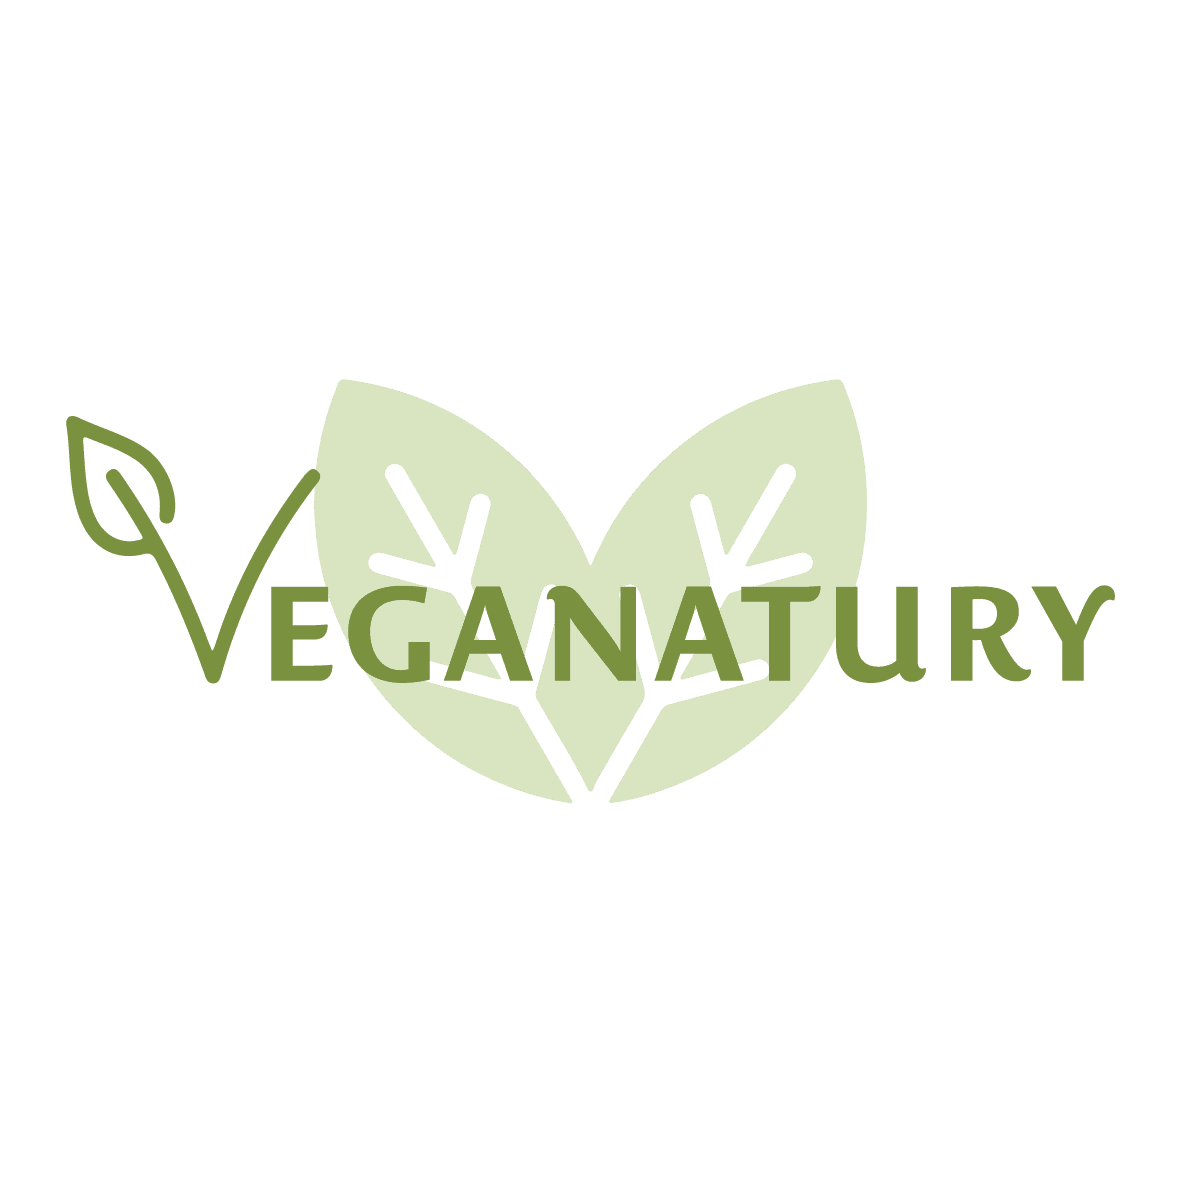 Veganatury